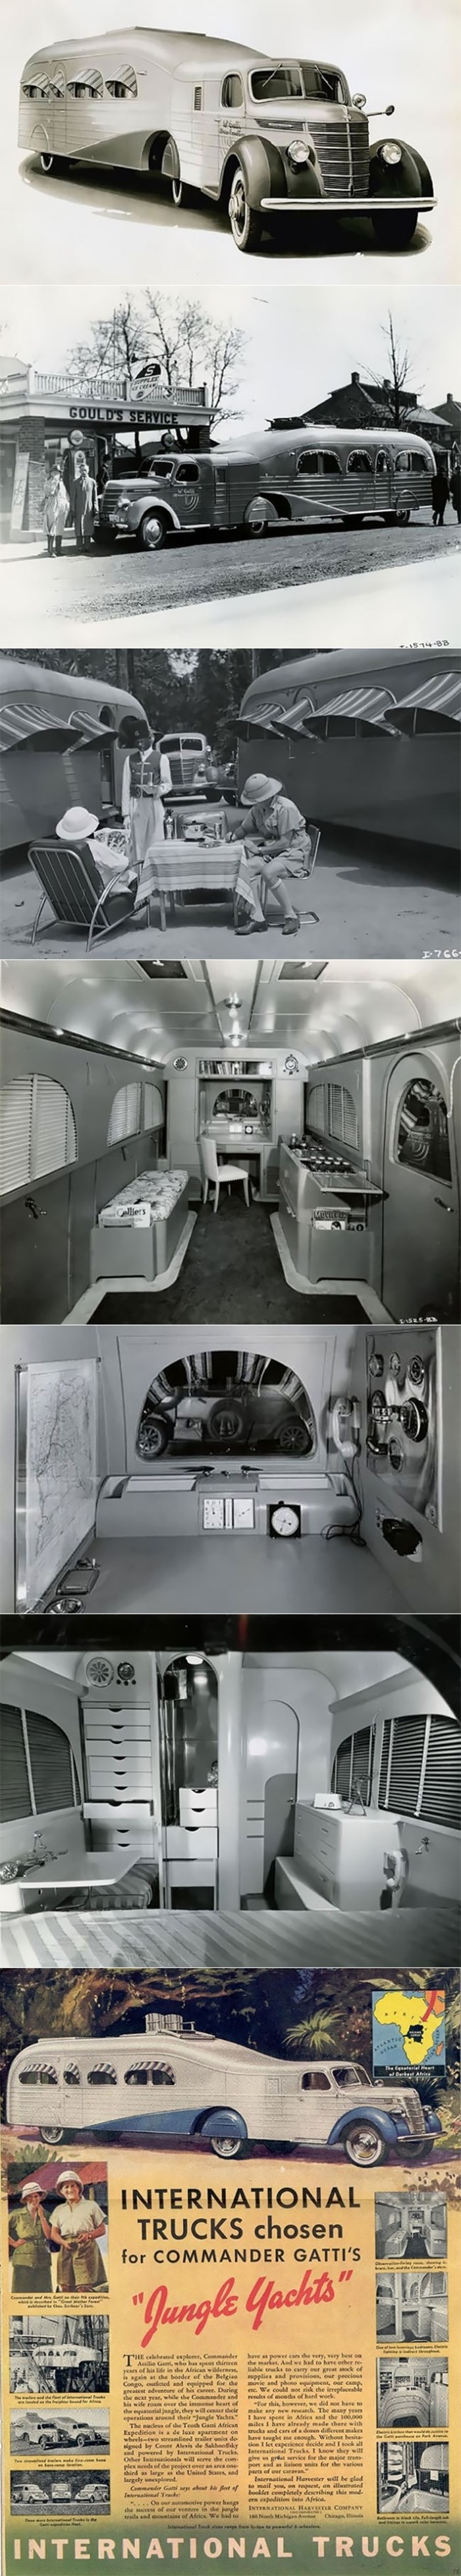 Stare slike otkrivaju kako je izgledala unutrašnjost luksuznih mobilnih domova iz 1930-ih godina